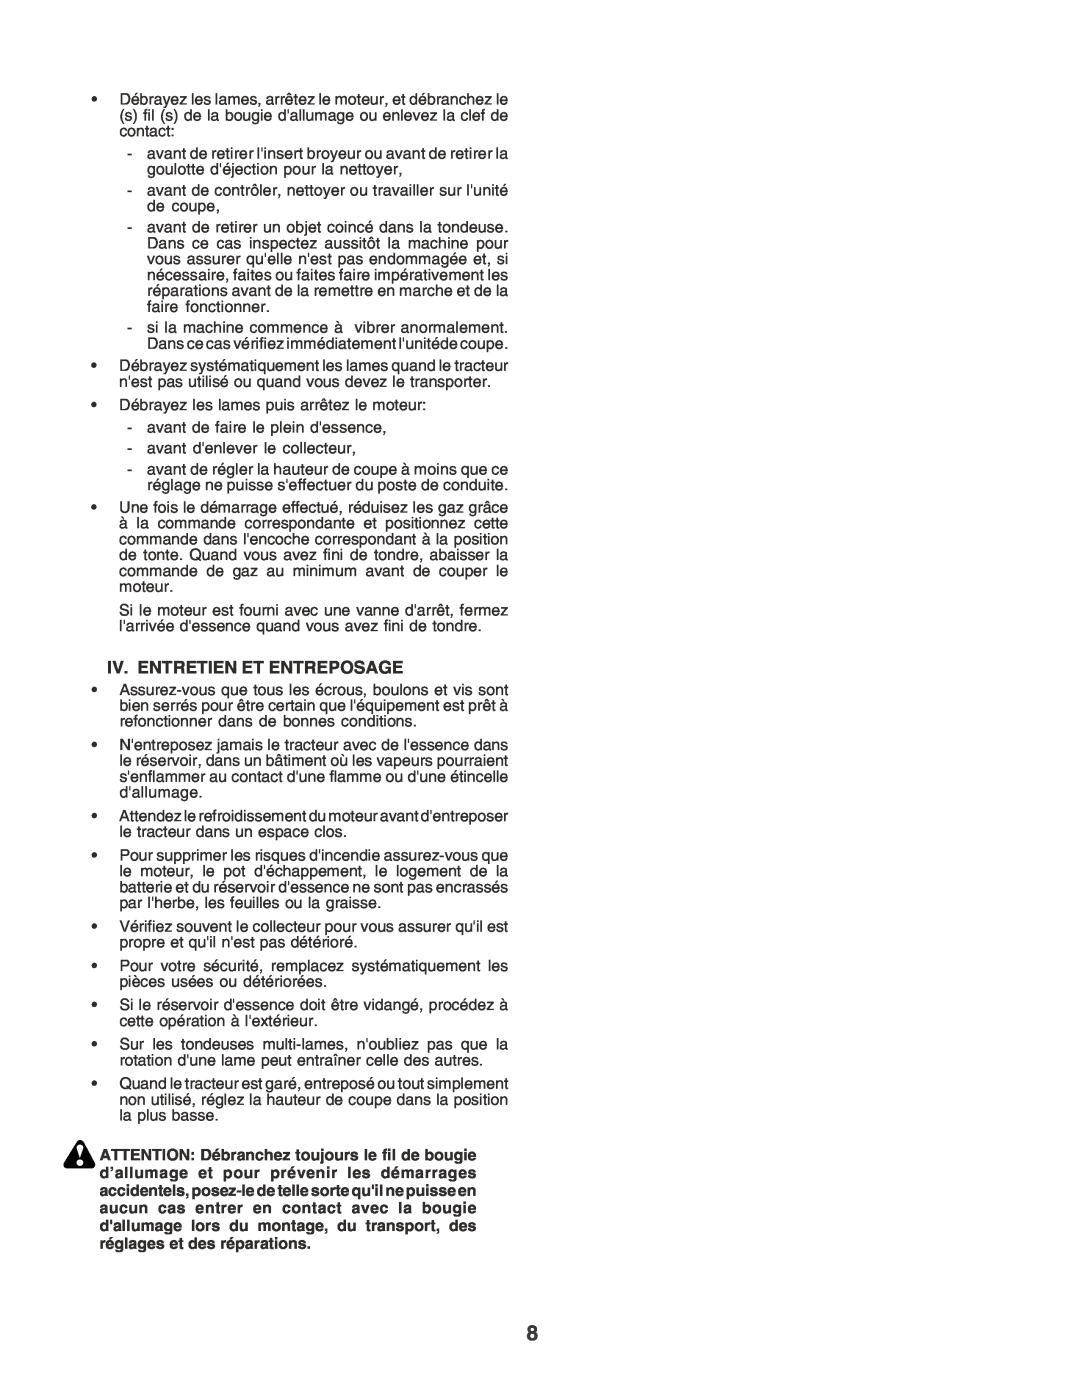 Husqvarna CTH170 instruction manual Iv. Entretien Et Entreposage 